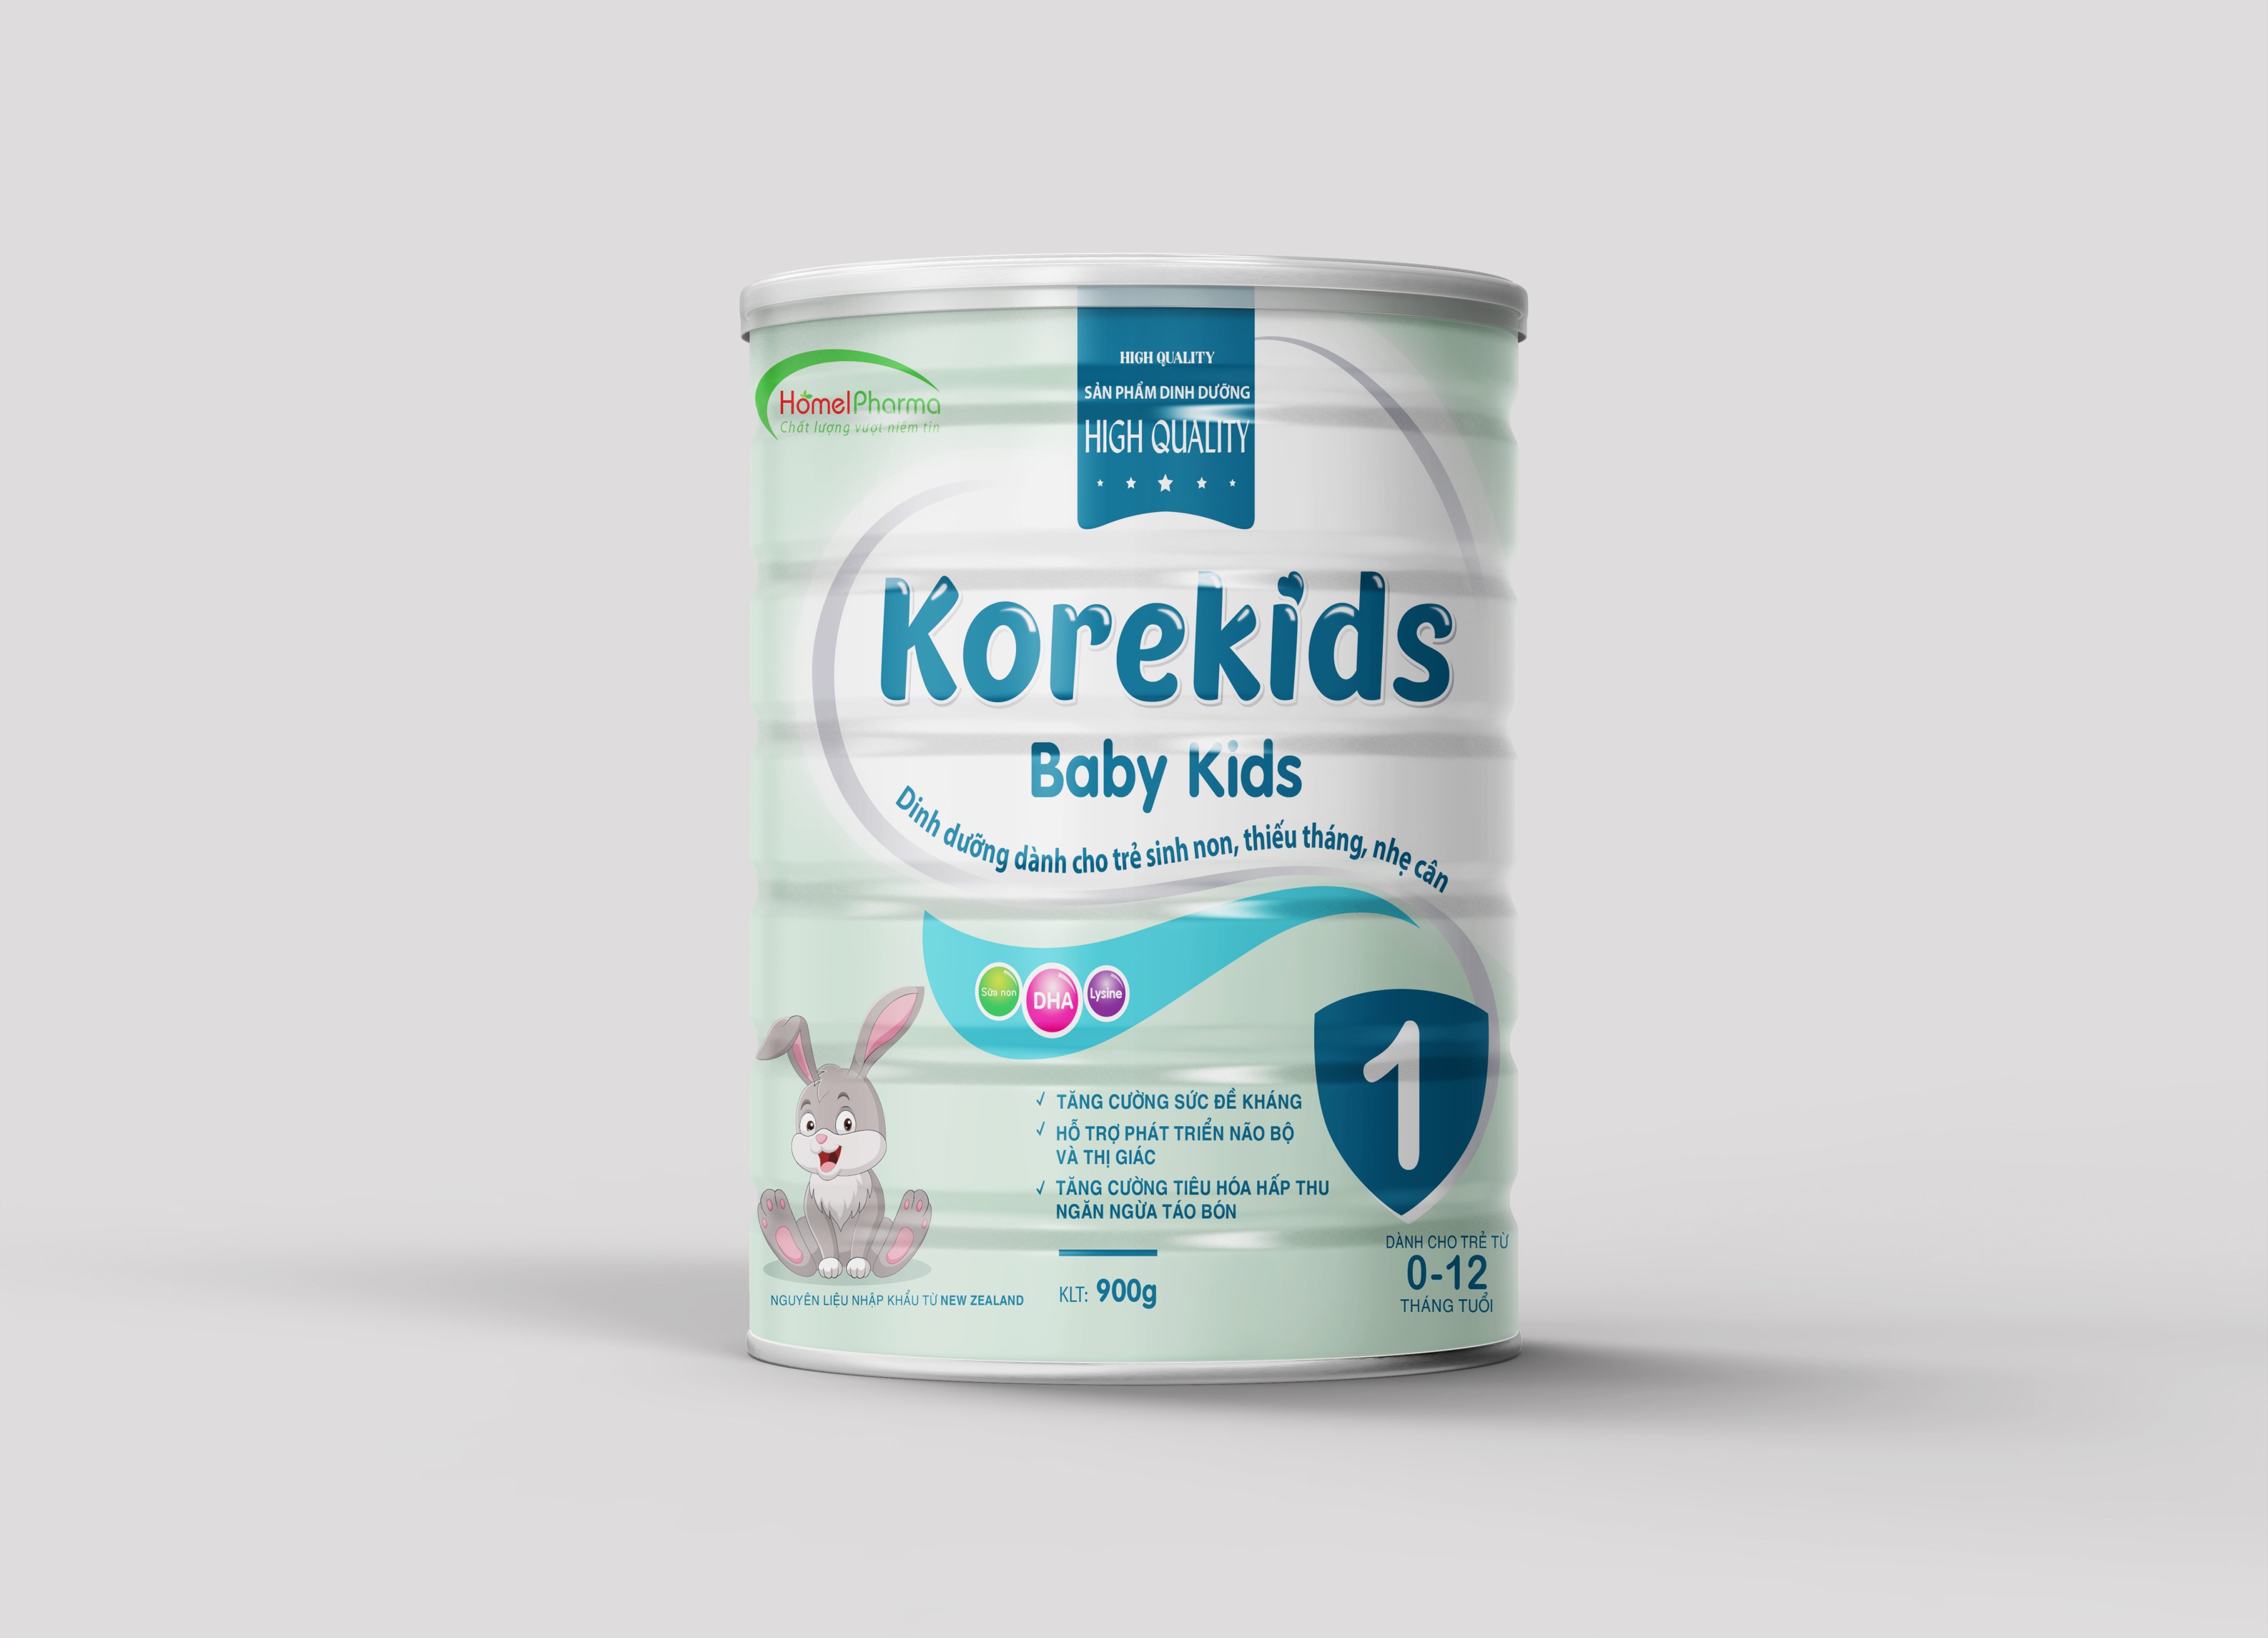 Korekids Baby Kids - Dành Cho Trẻ Sinh Non, Thiếu Tháng, Nhẹ Cân Từ 0-12 Tháng